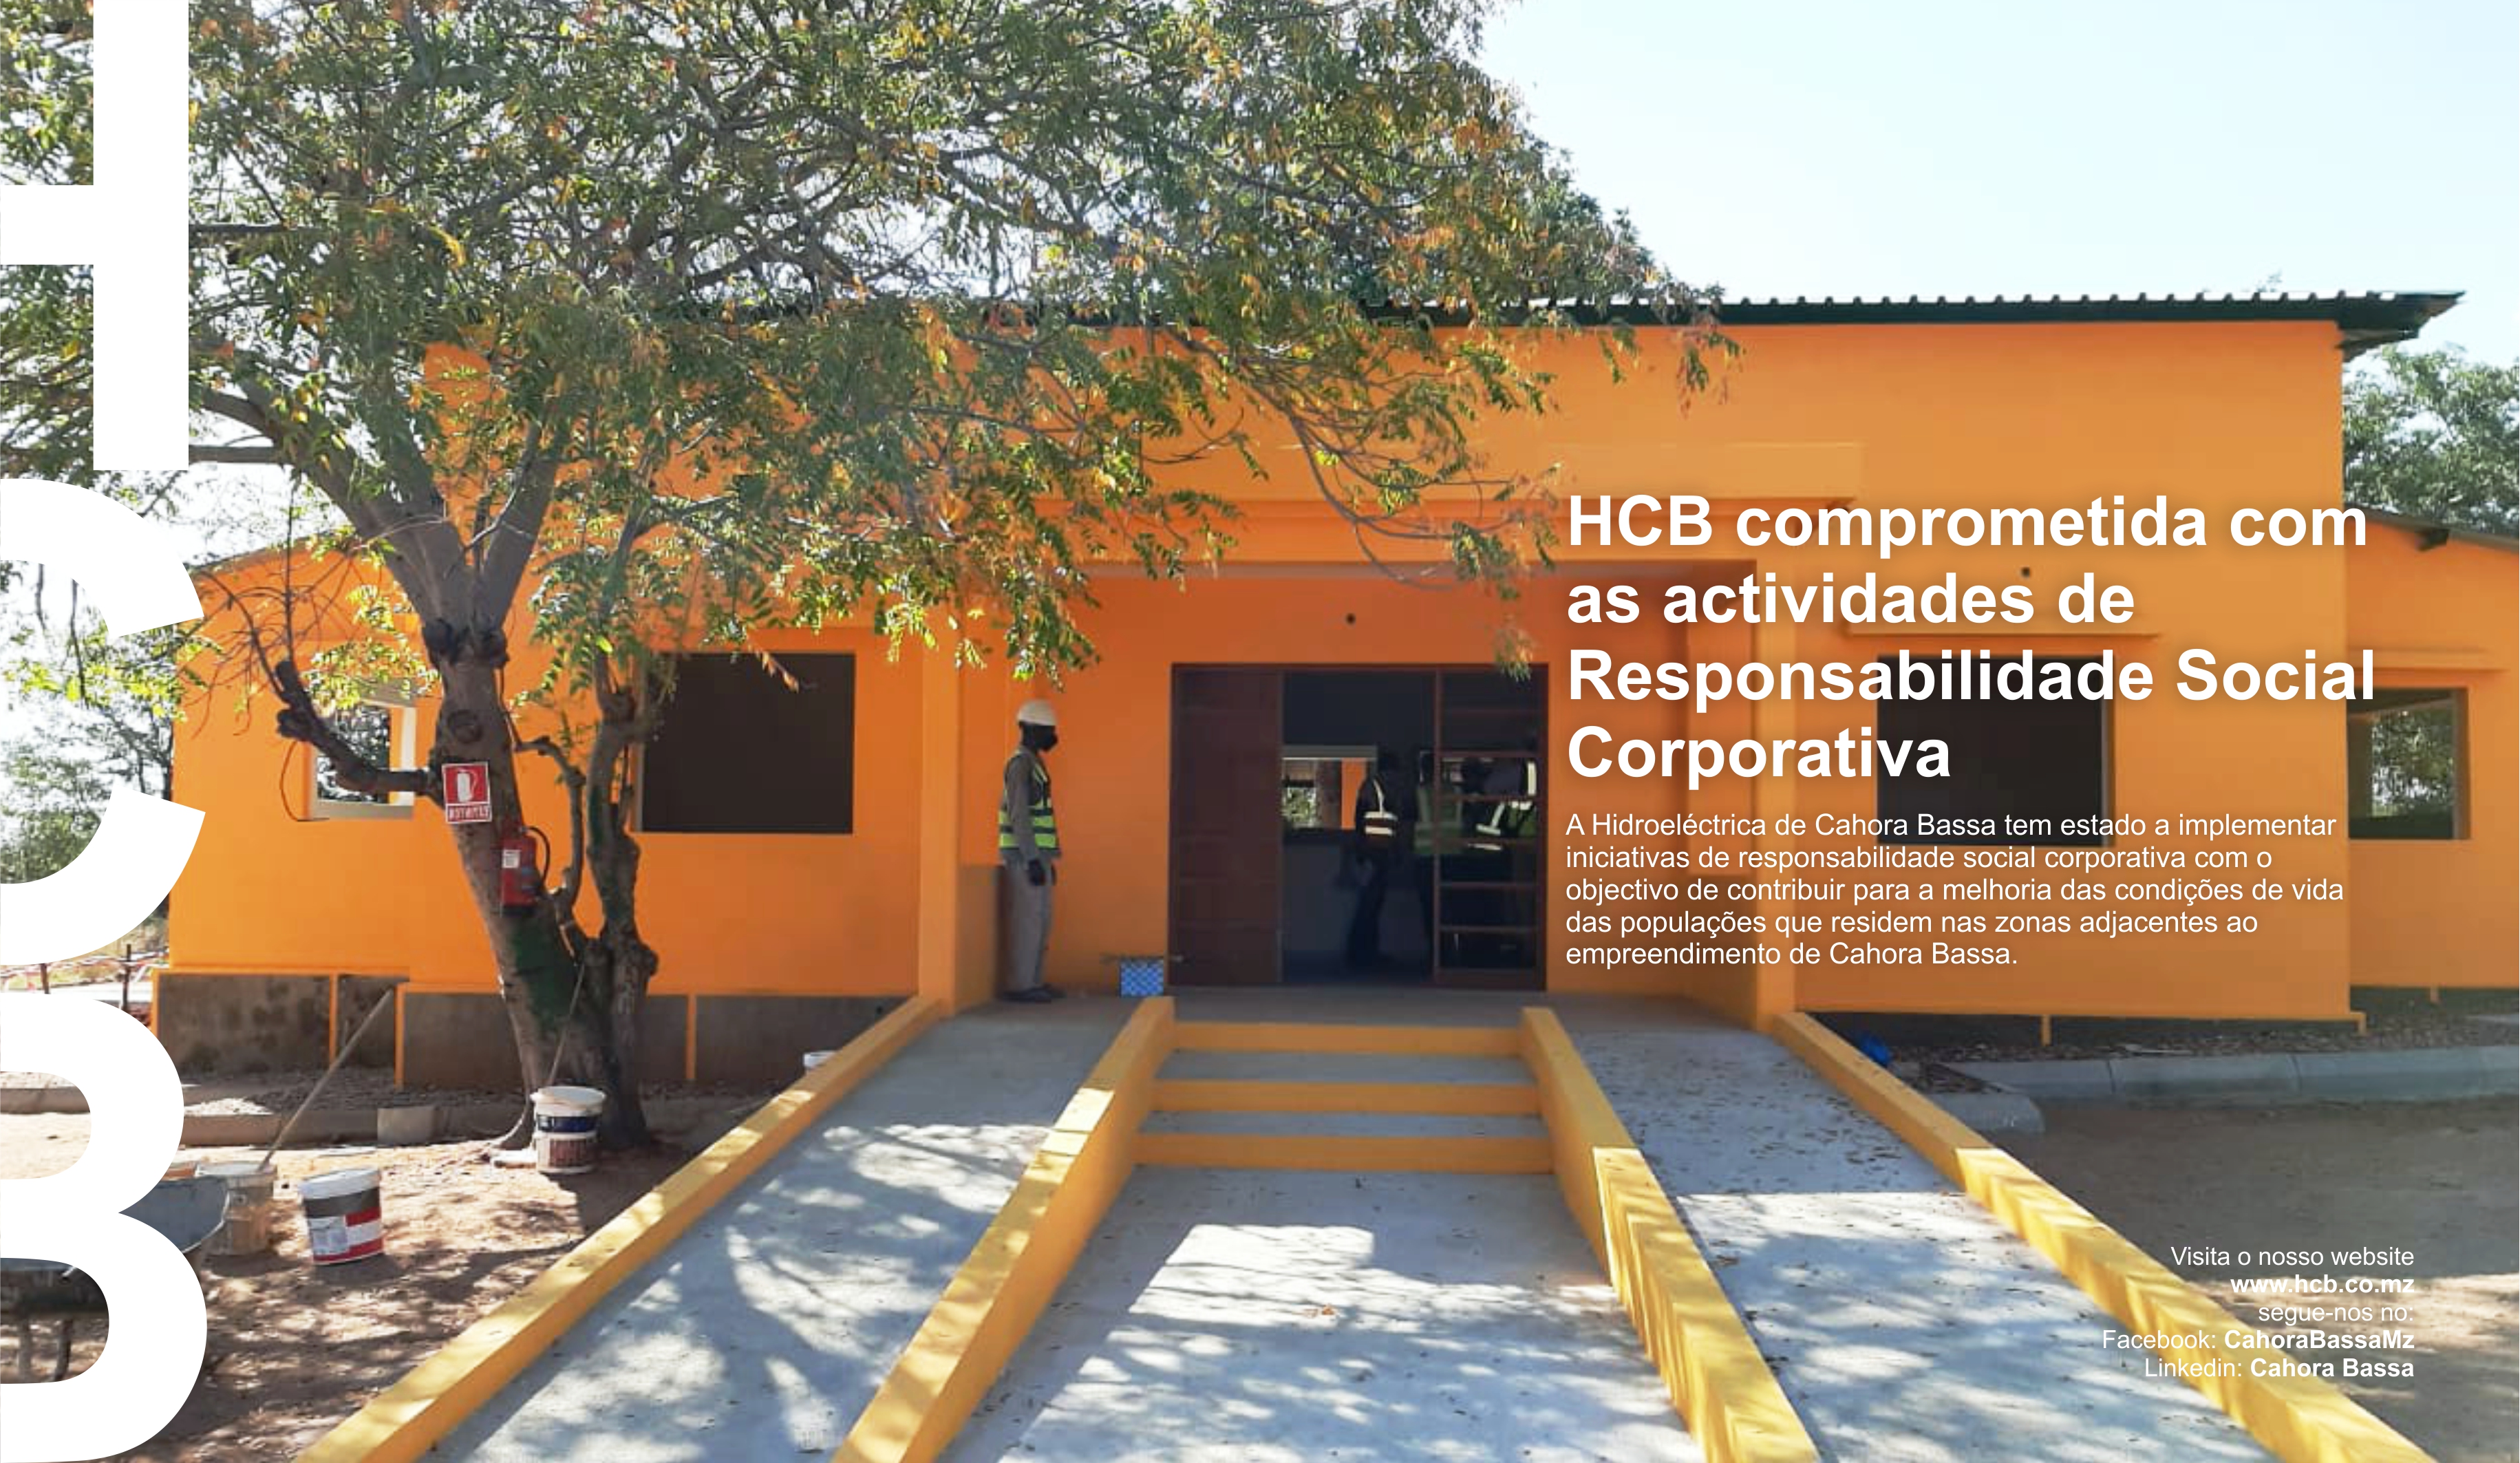 HCB comprometida com as actividades de Responsabilidade Social Corporativa..FB e LK